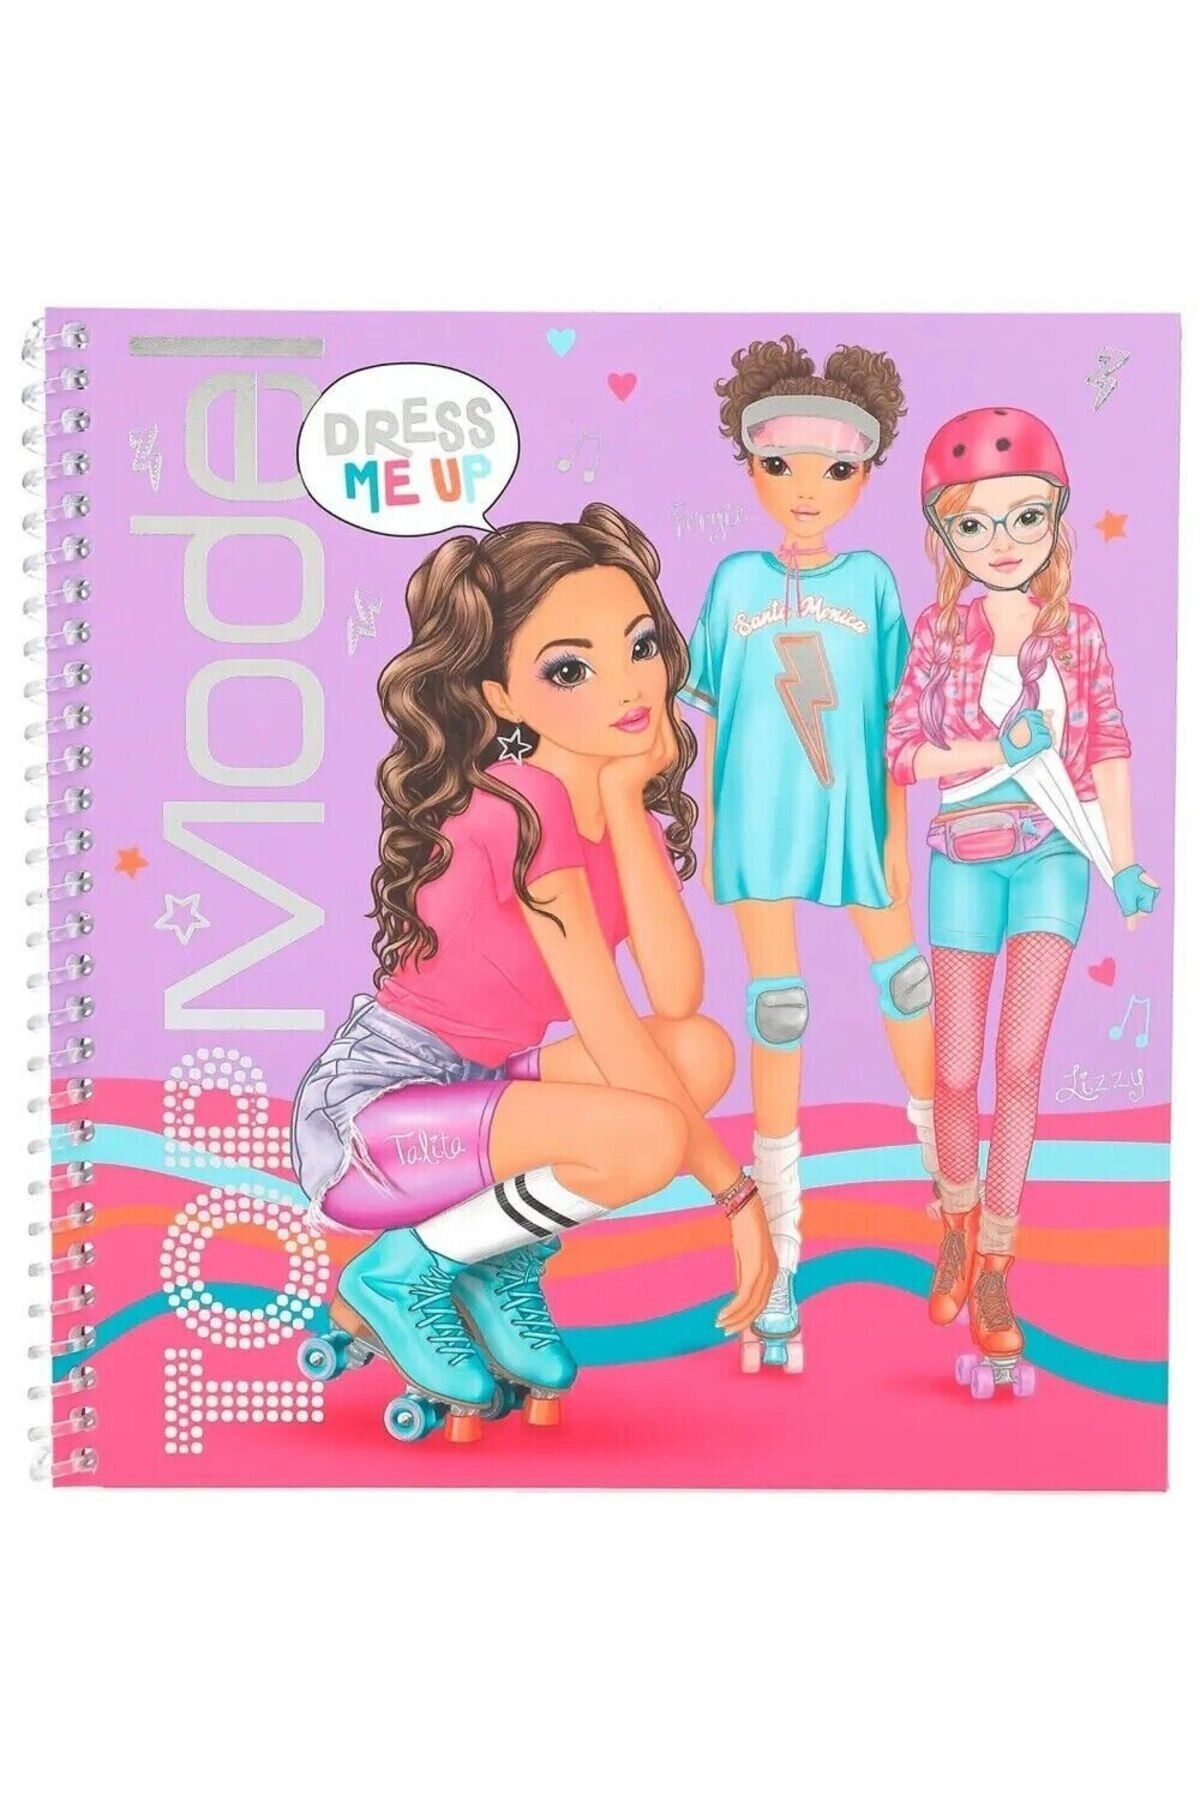 Edu Kırtasiyem Top Model Little Dancer Dress Me Sticker Book - Trendyol